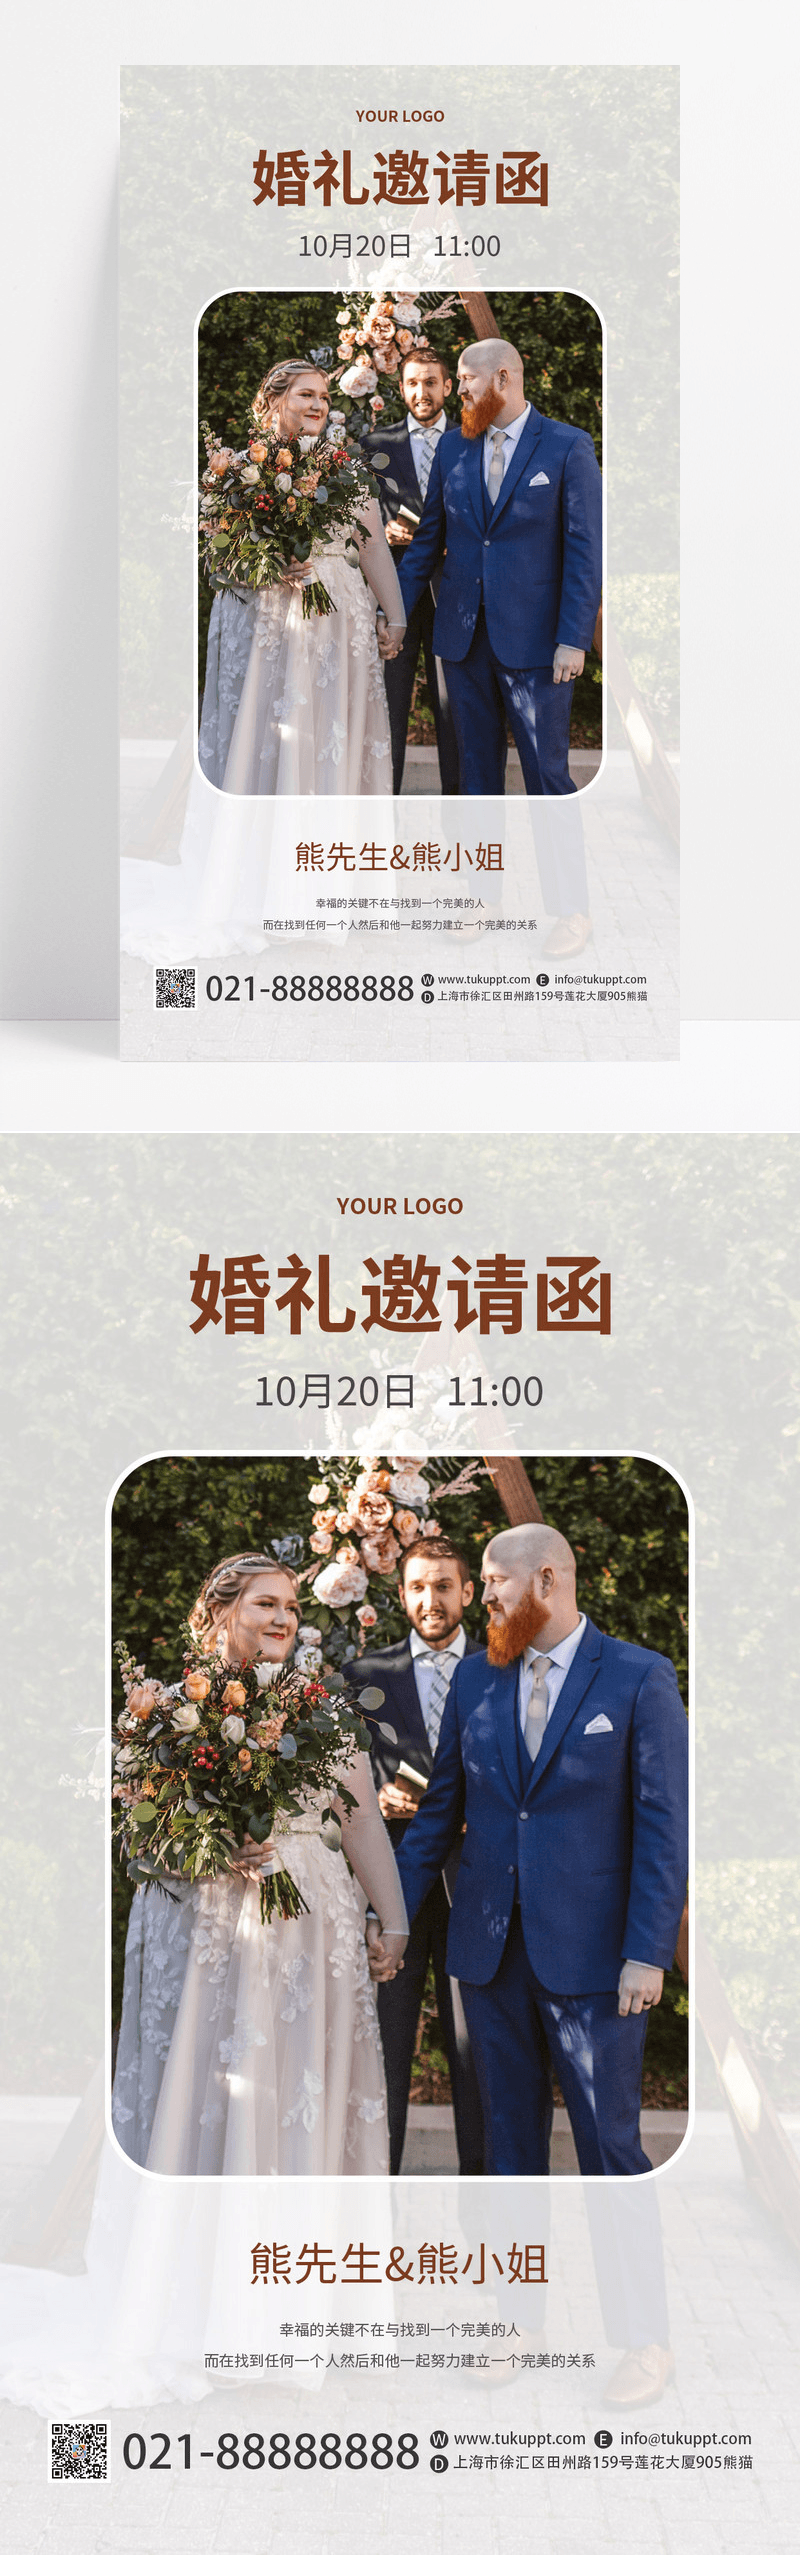 实景图简约清新风格婚礼邀请函宣传海报